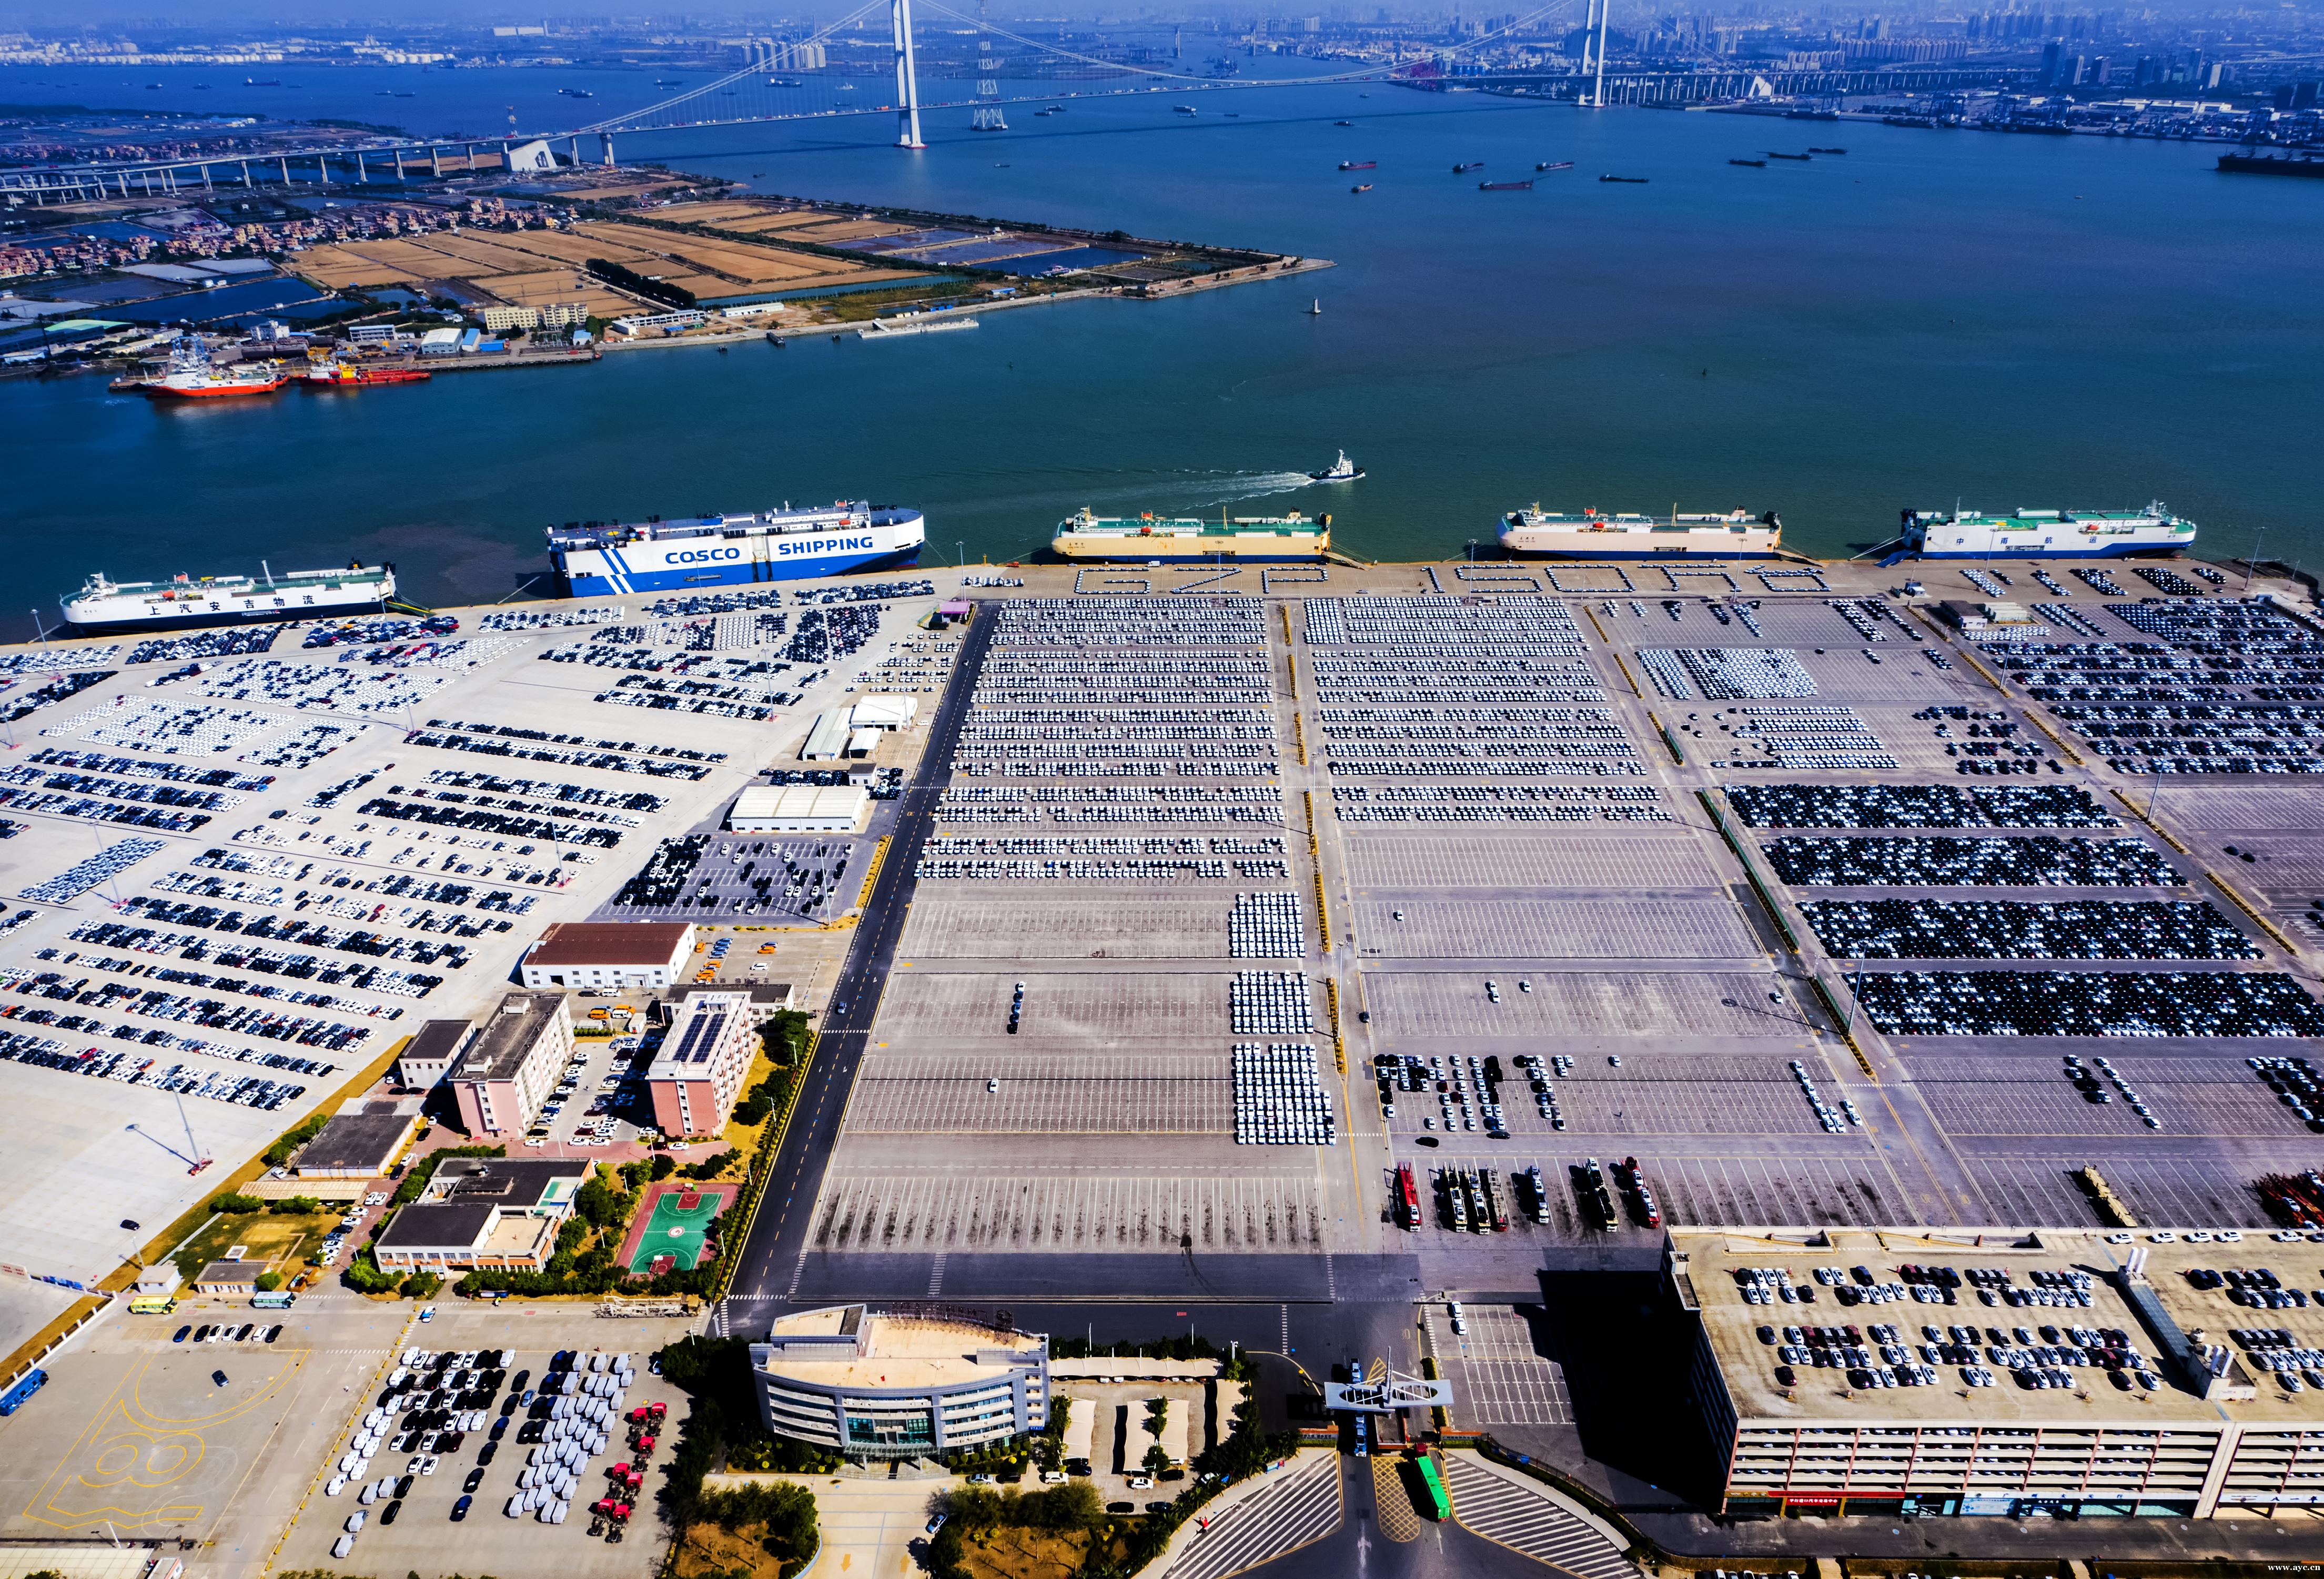 全国沿海港口第一！去年广州港集团滚装商品汽车吞吐量超150万辆